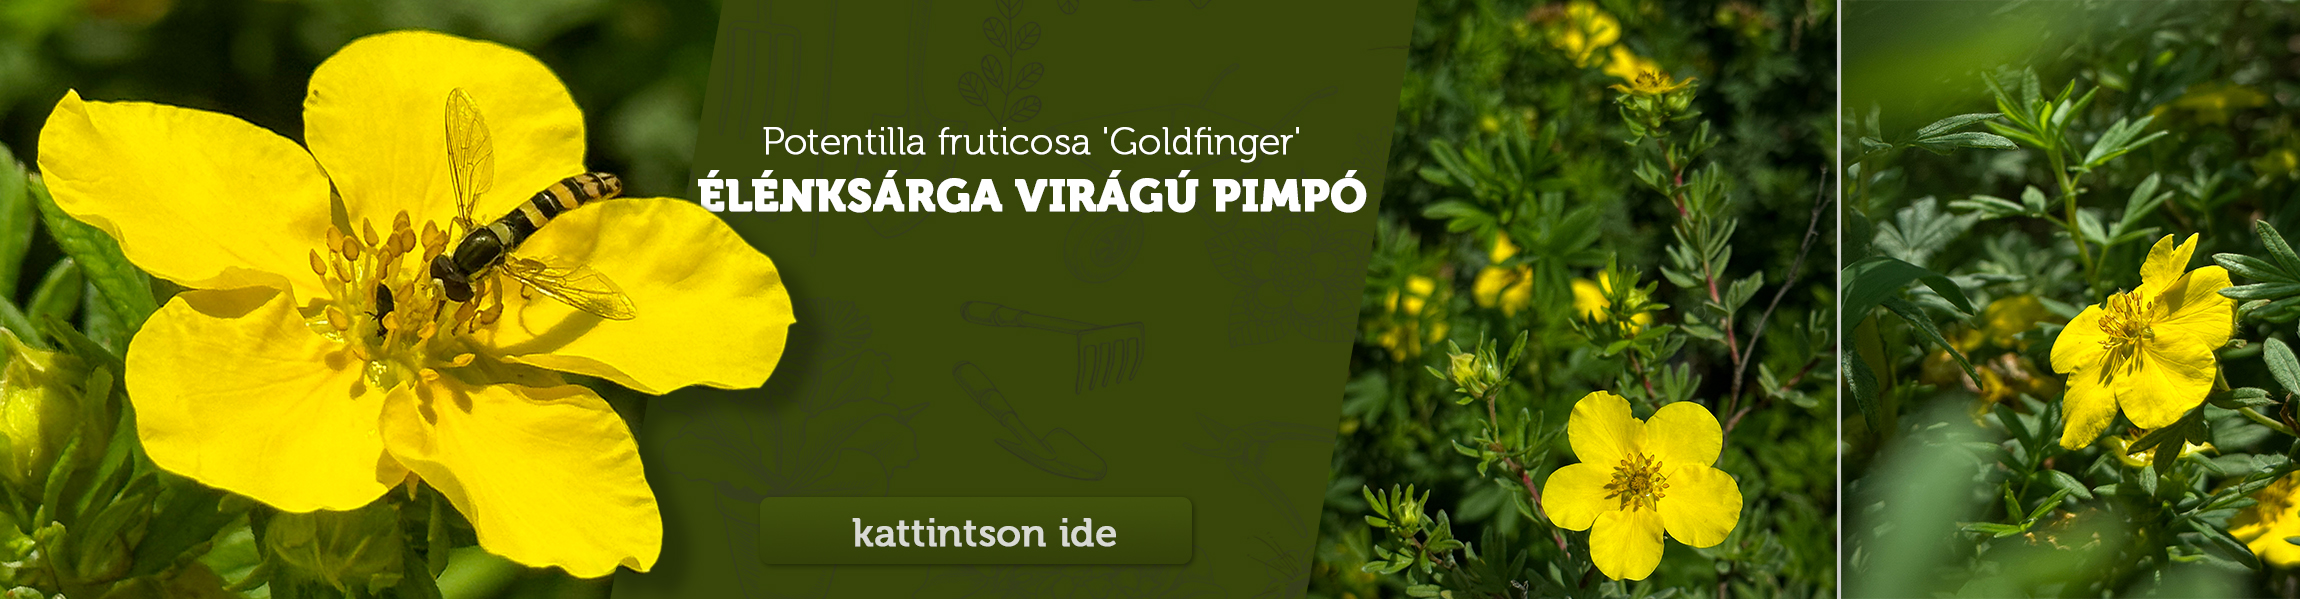 Potentilla fruticosa 'Goldfinger' - Élénksárga virágú pimpó